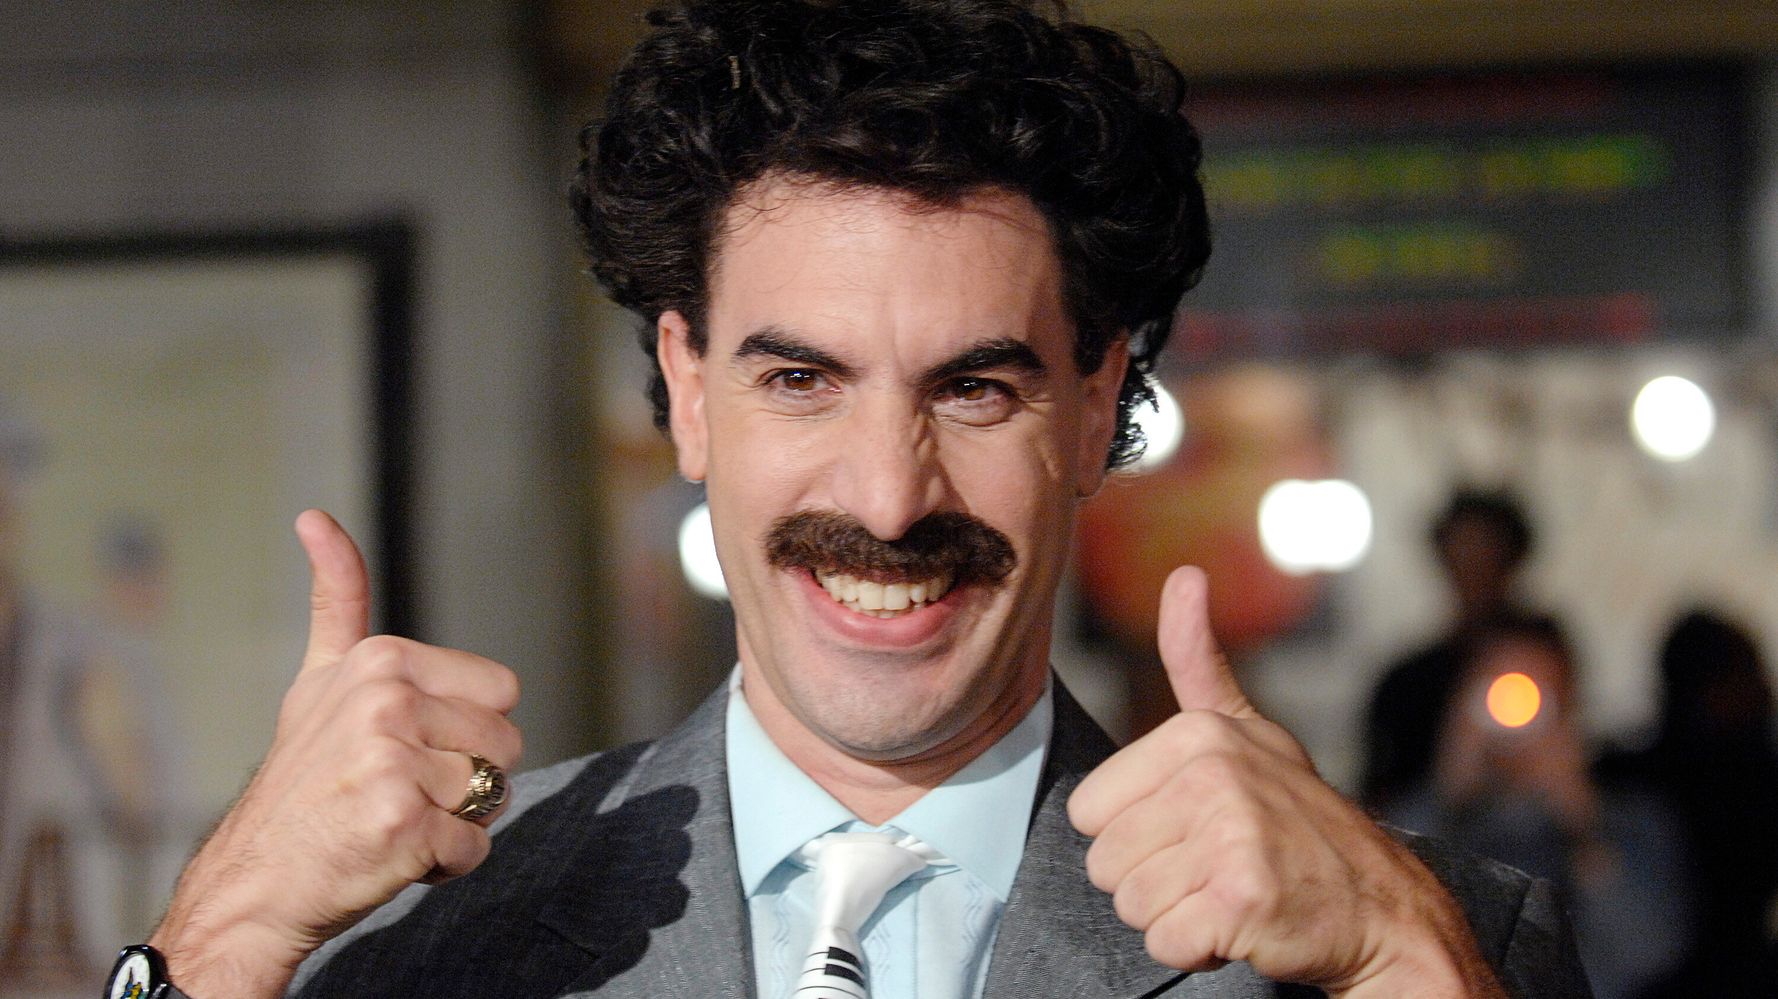 Kazhakstan Adopts Borat's Catchphrase As New Tourism Slogan